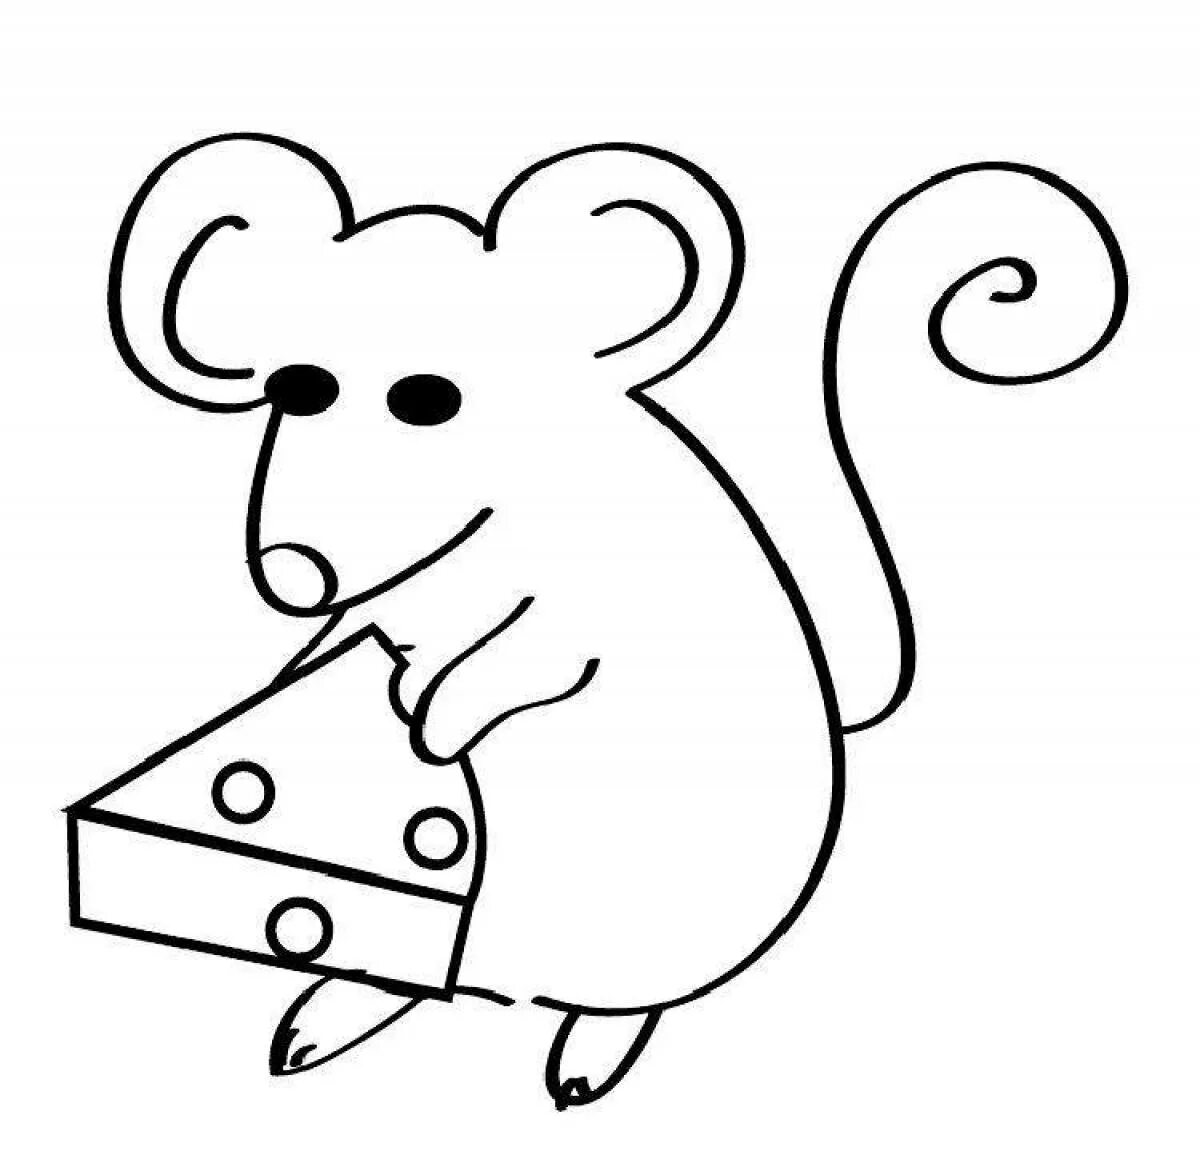 Мышь раскраска для детей. Мышка контур для детей. Мышка для раскрашивания детям. Мышка раскраска для детей. Раскраска мышь распечатать